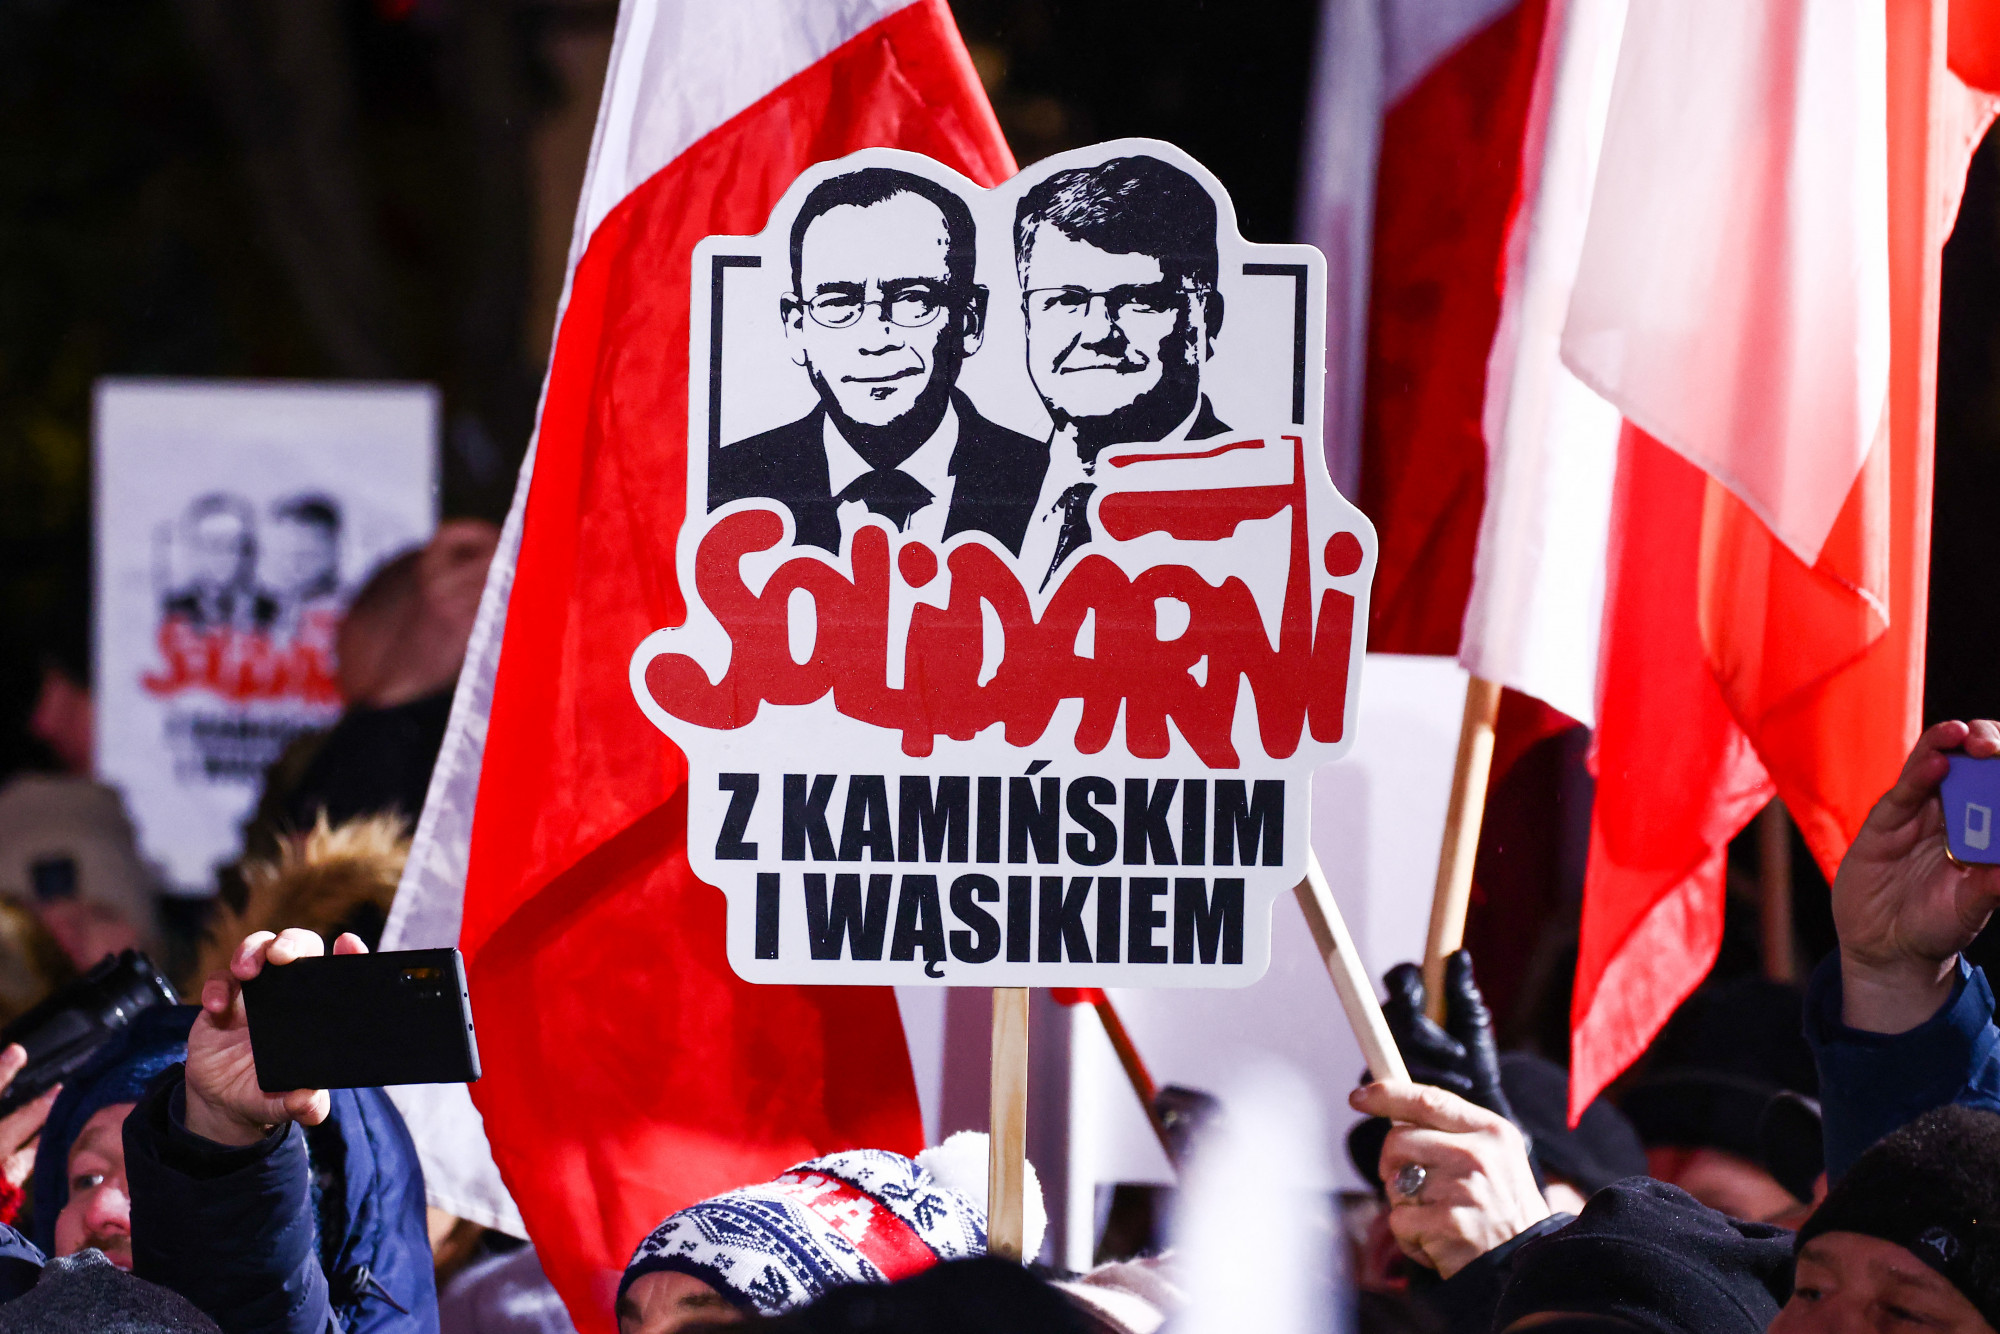 A lengyel példa megmutatja, hogy milyen borzalmasan nehéz lebontani egy autoriter rendszert tisztán és demokratikusan